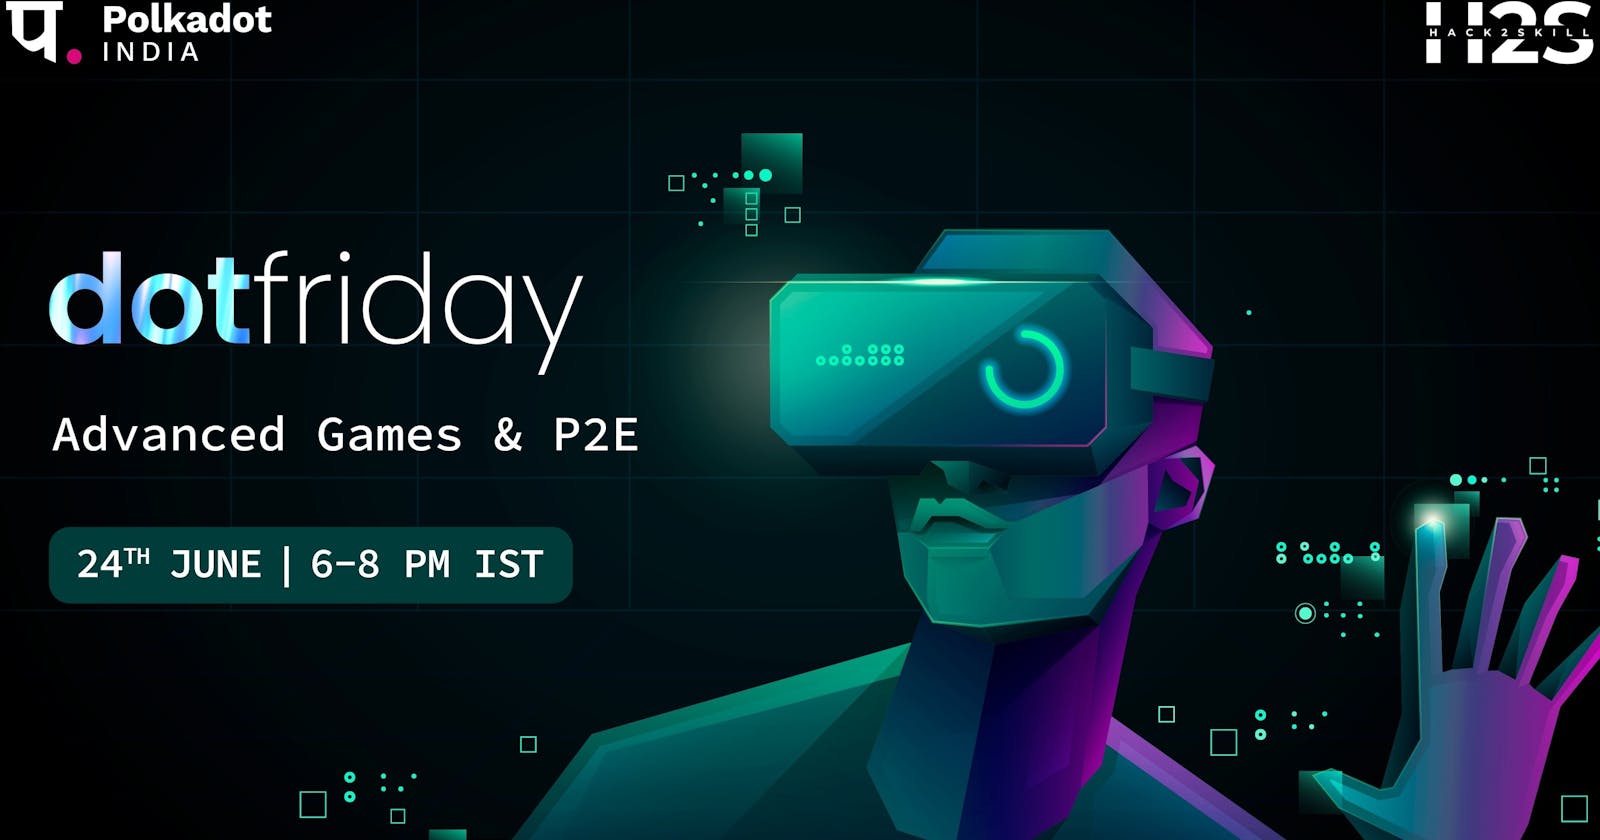 Advance Gaming and P2E Program - Dotfriday by Polkadot India